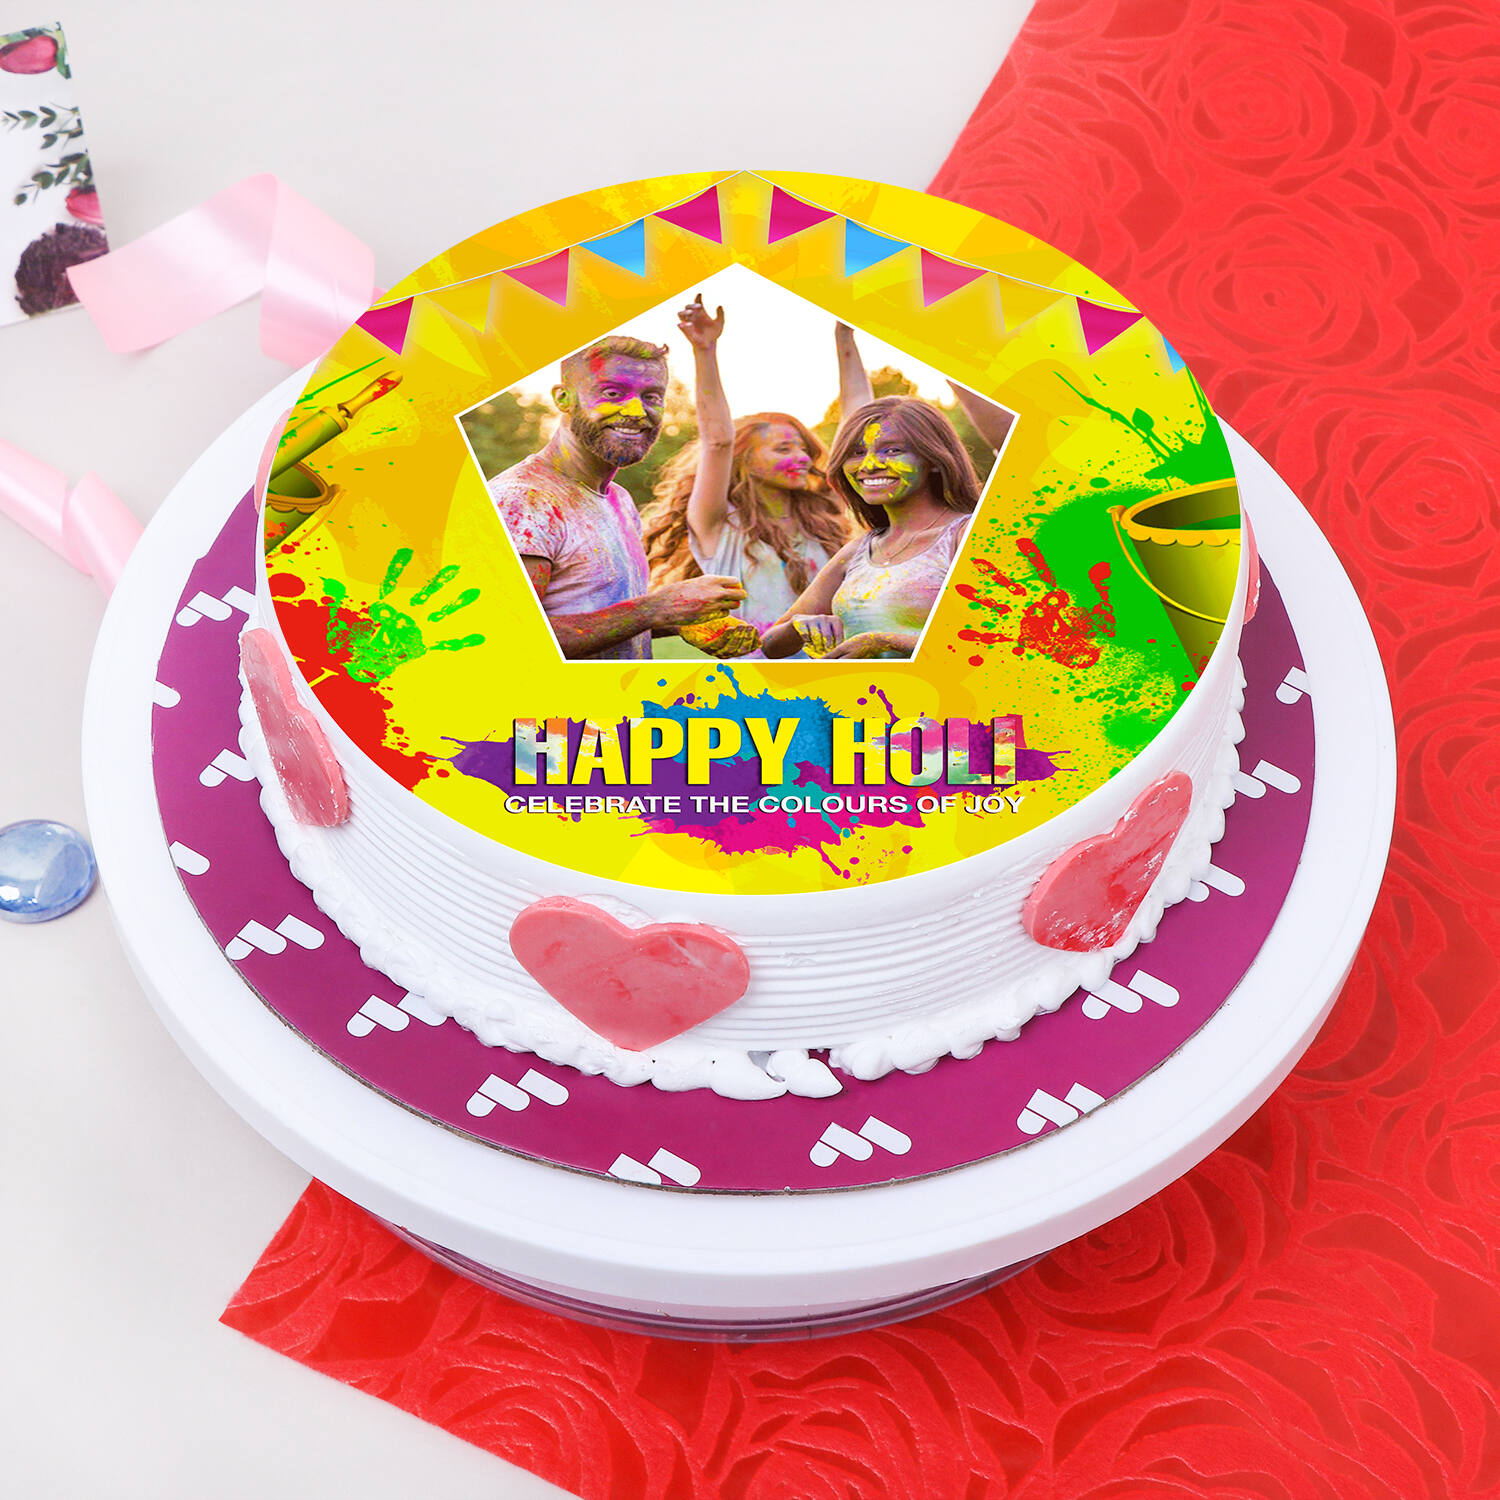 Order Birthday & Anniversary Celebration Cakes Online | Happy Belly  BakesHappy Birthday Cakes – Buy